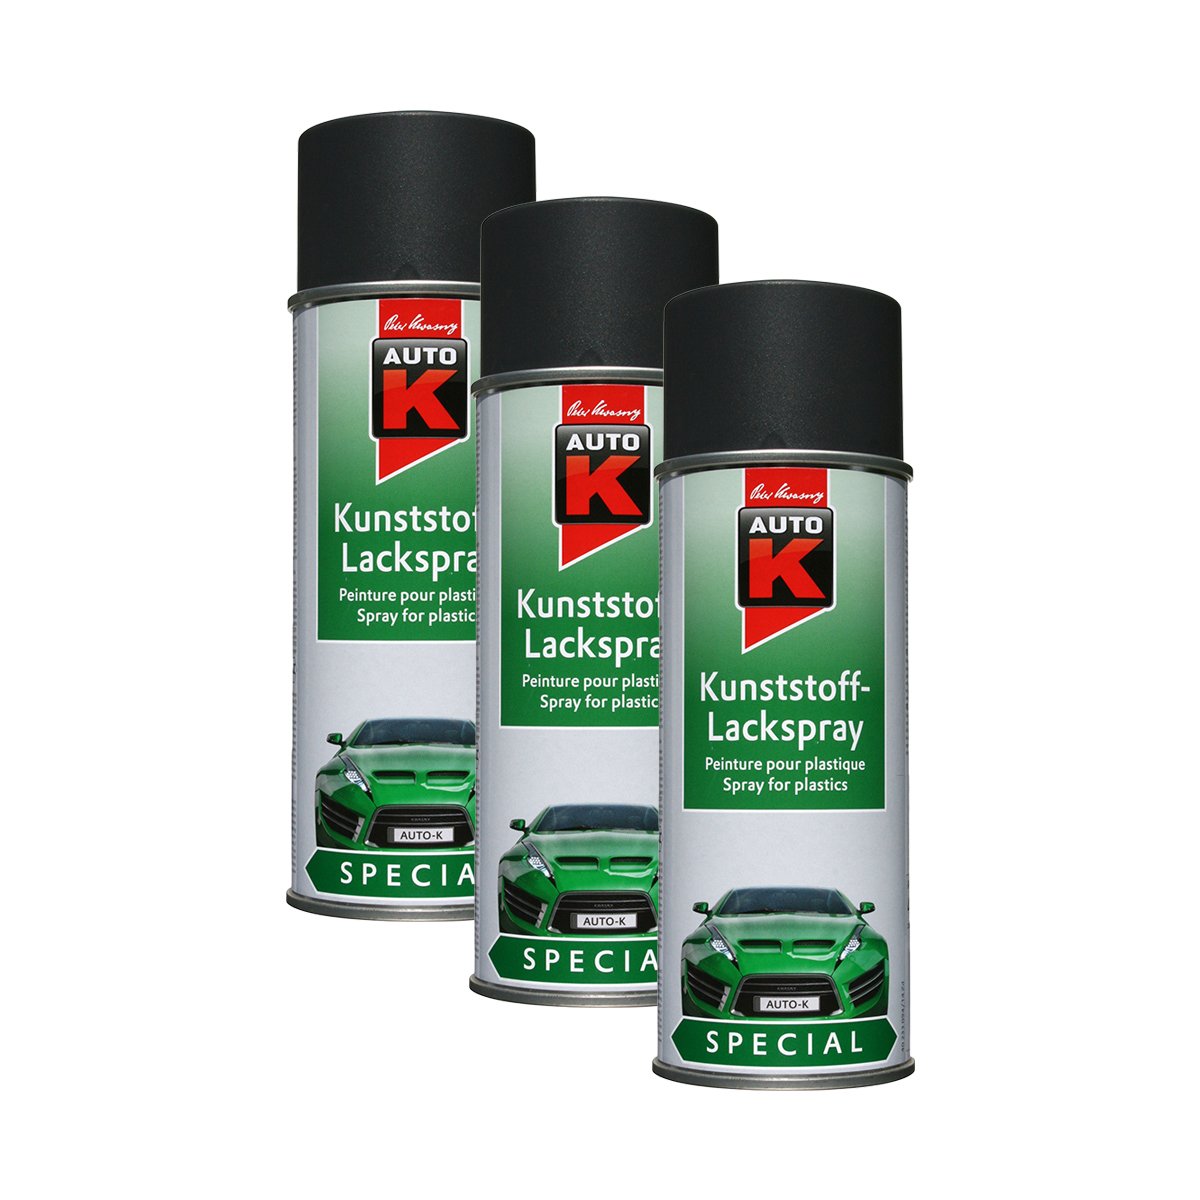 Kunststoff-Lackspray Anthrazit 400Ml Kwasny 233 096 Auto-K Special 3X